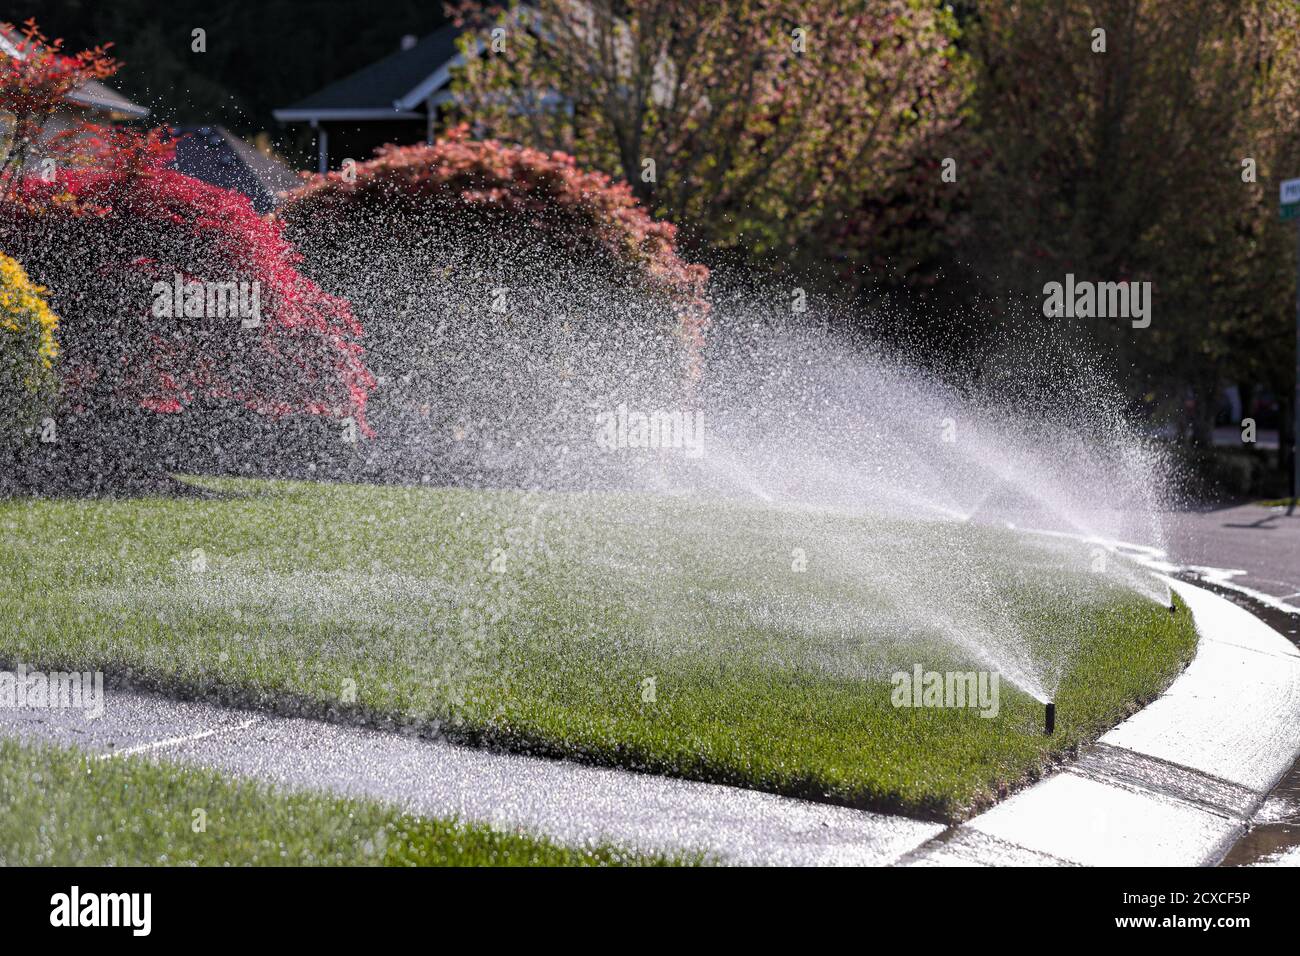 L'eau est pulvérisée par un système d'arrosage automatique sur la pelouse verte par temps ensoleillé. Banque D'Images